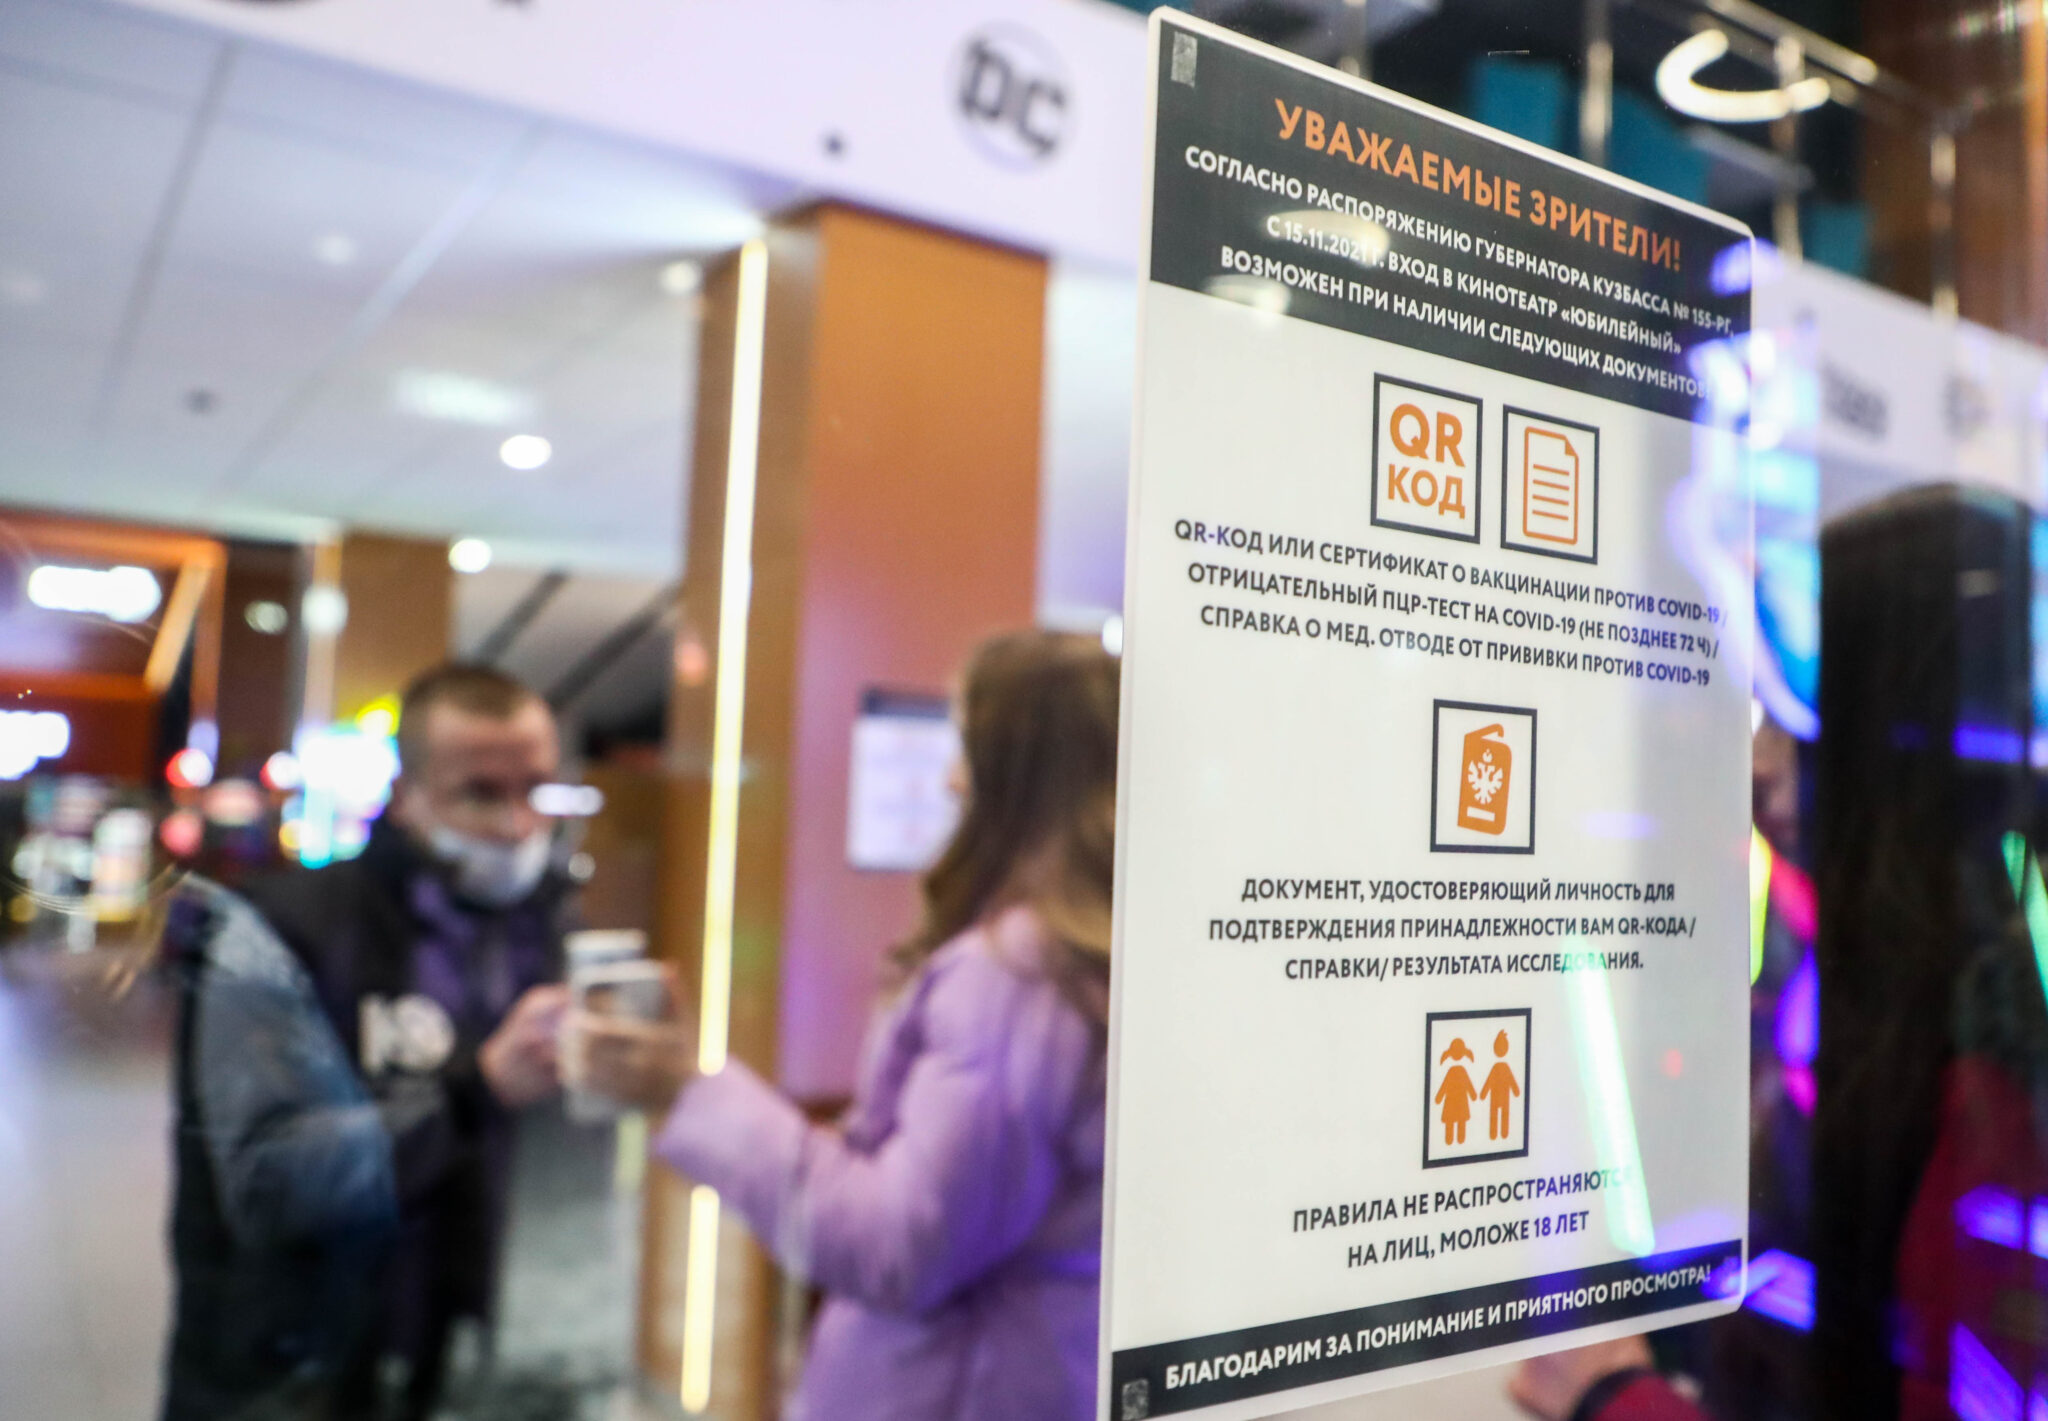 Посетитель кинотеатра демонстрирует QR-код. Фото Maxim Kiselev / TASS / Scanpix / Leta